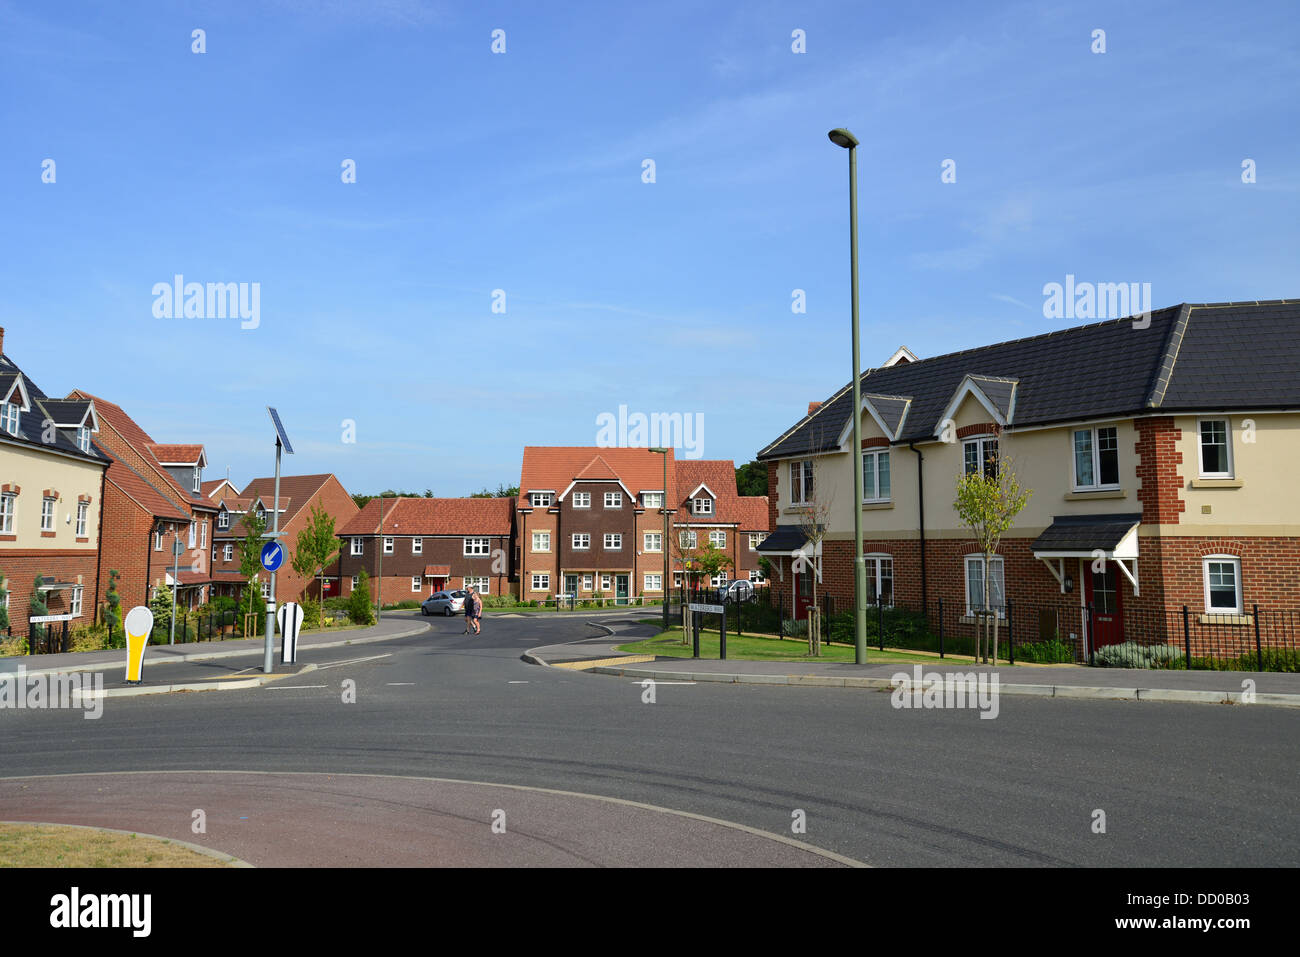 Nouvelles maisons sur Earlswood Park housing development, Bagshot, Surrey, Angleterre, Royaume-Uni Banque D'Images